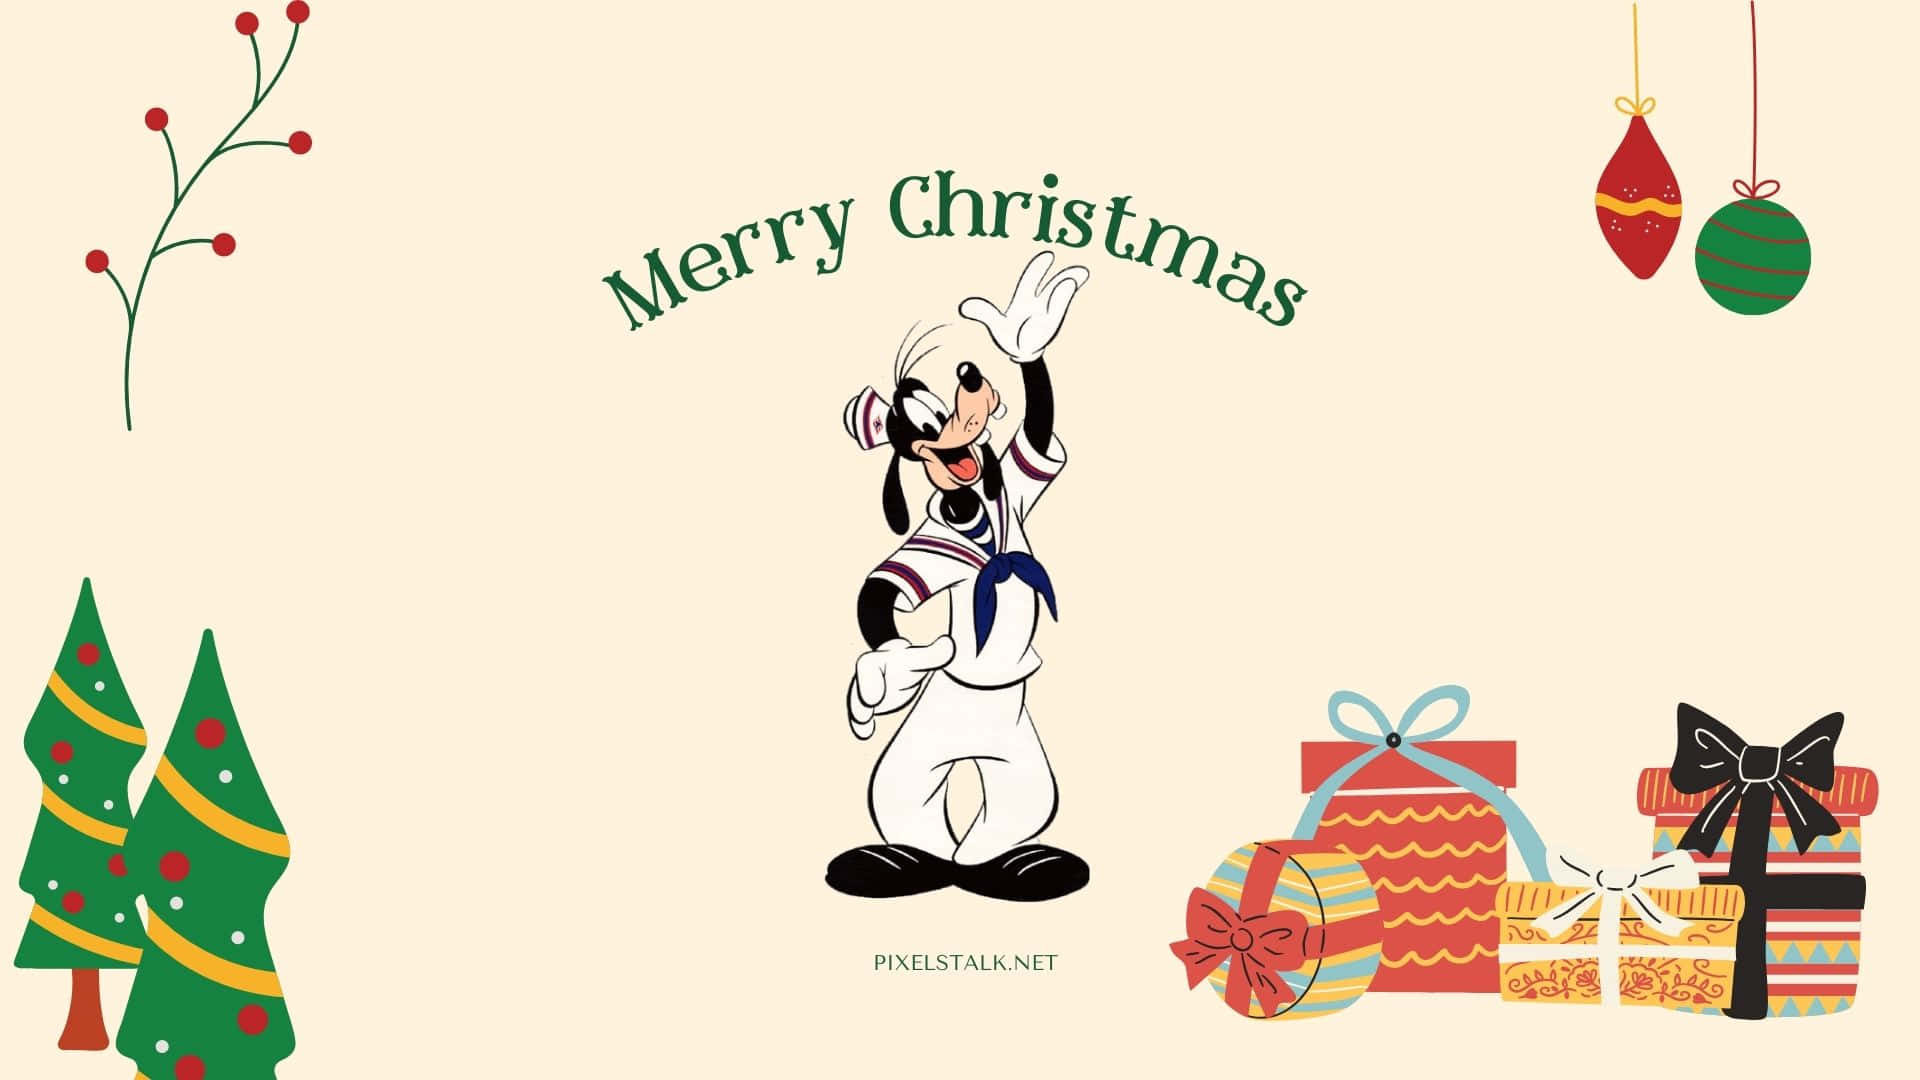 Verwöhnensie Sich Zu Weihnachten Mit Einem Magischen Disney-erlebnis Auf Ihrem Ipad. Wallpaper